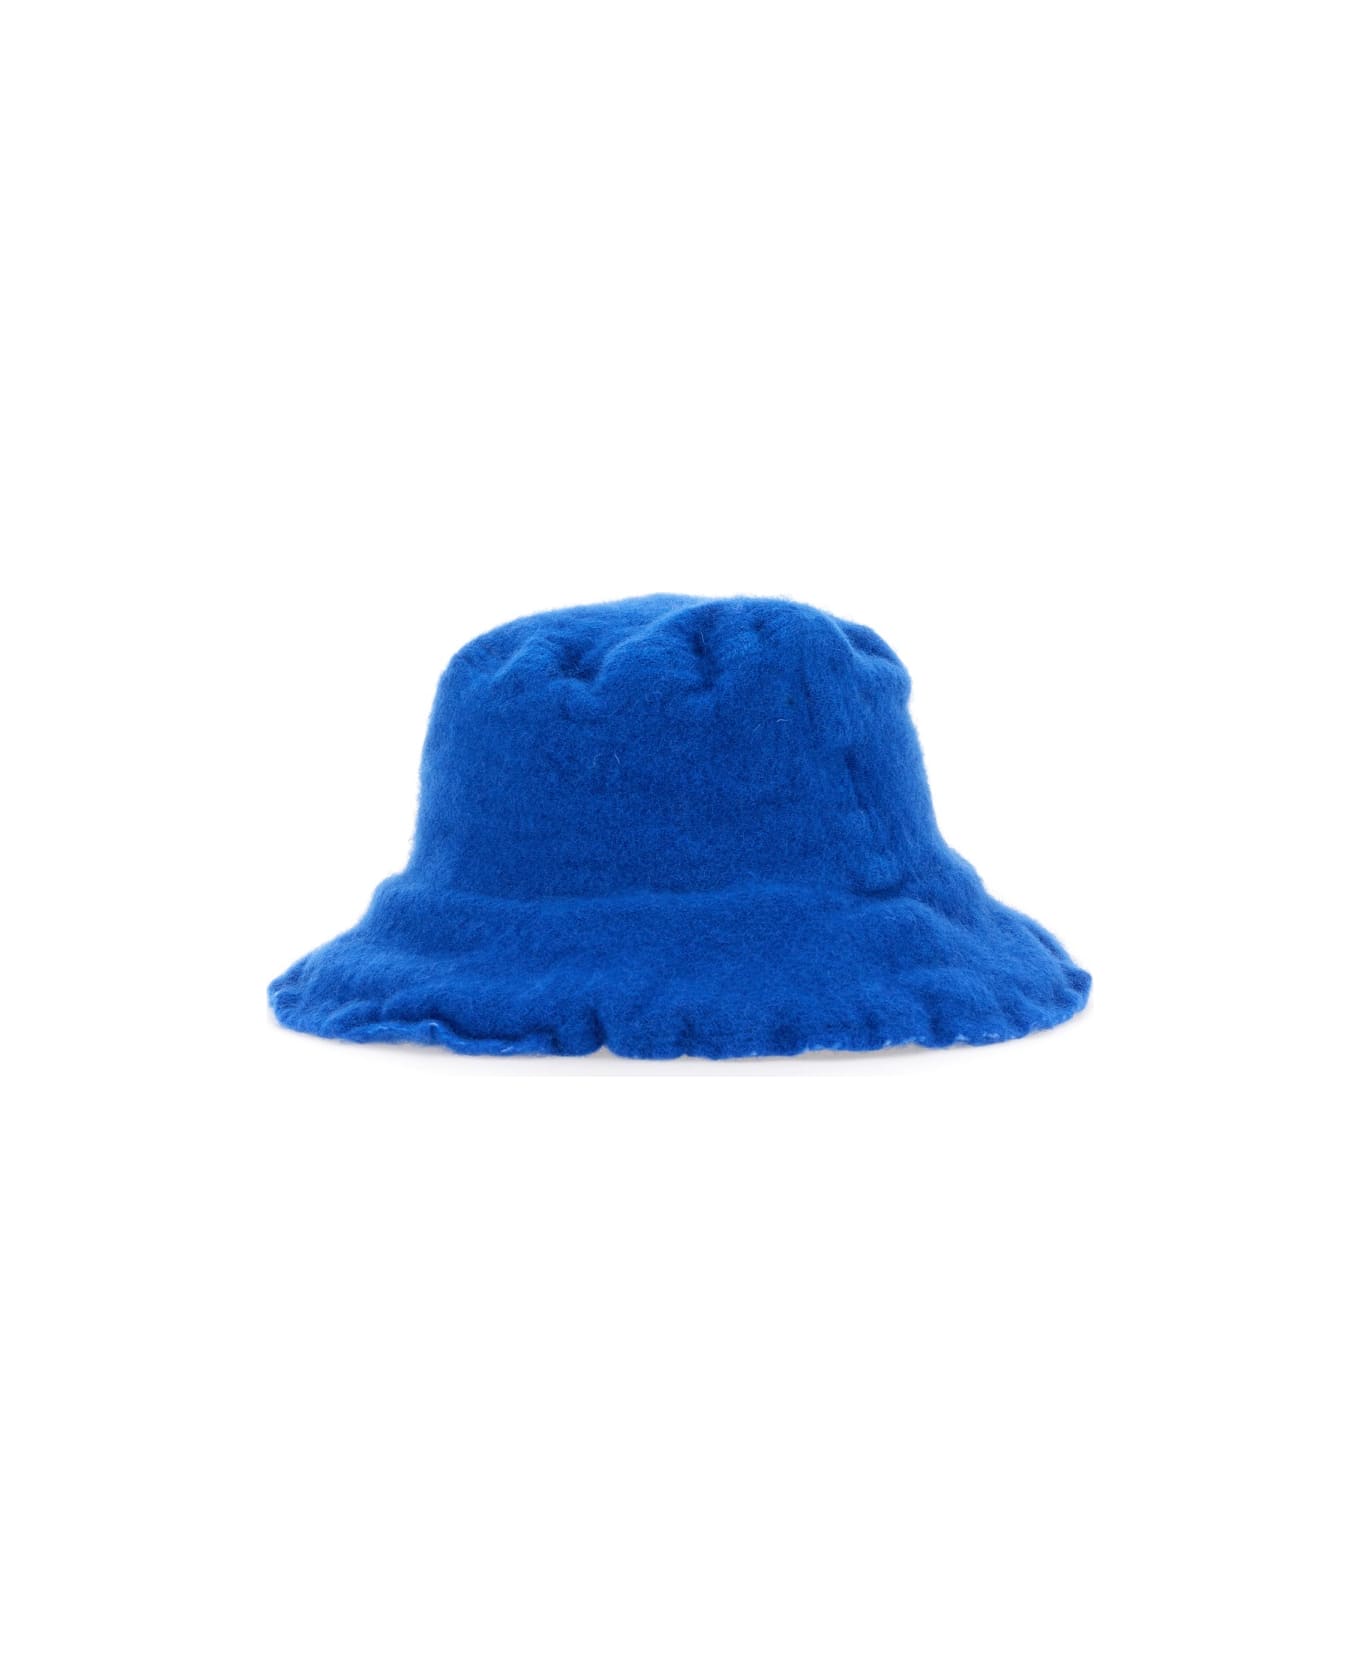 Comme des Garçons Shirt Wool Bucket Hat - BLUE 帽子